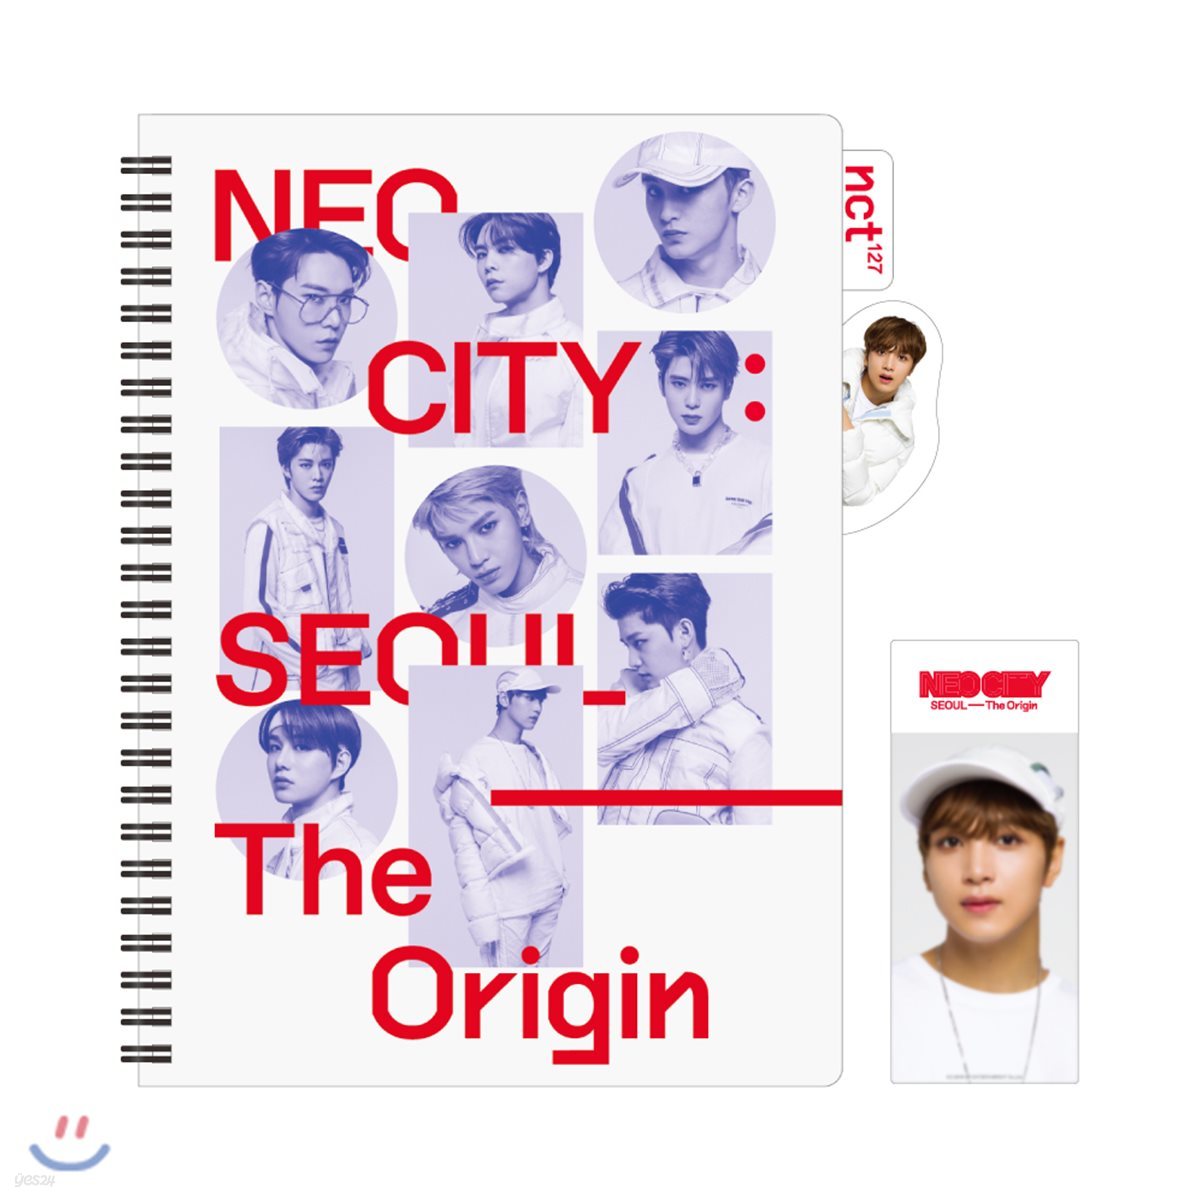 NCT 127 [NEO CITY : SEOUL - The Origin]- 인덱스노트+북마크 [해찬]